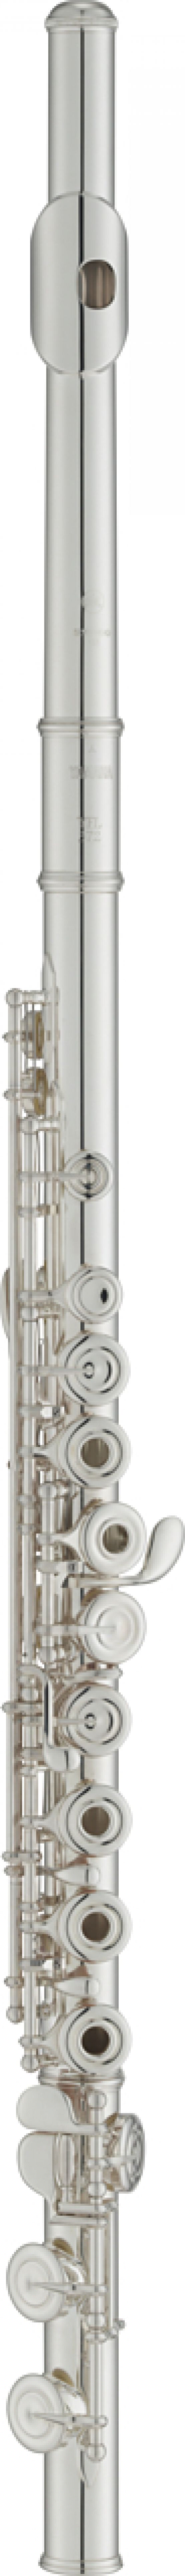 Yamaha YFL-372 Open Hole flute main image